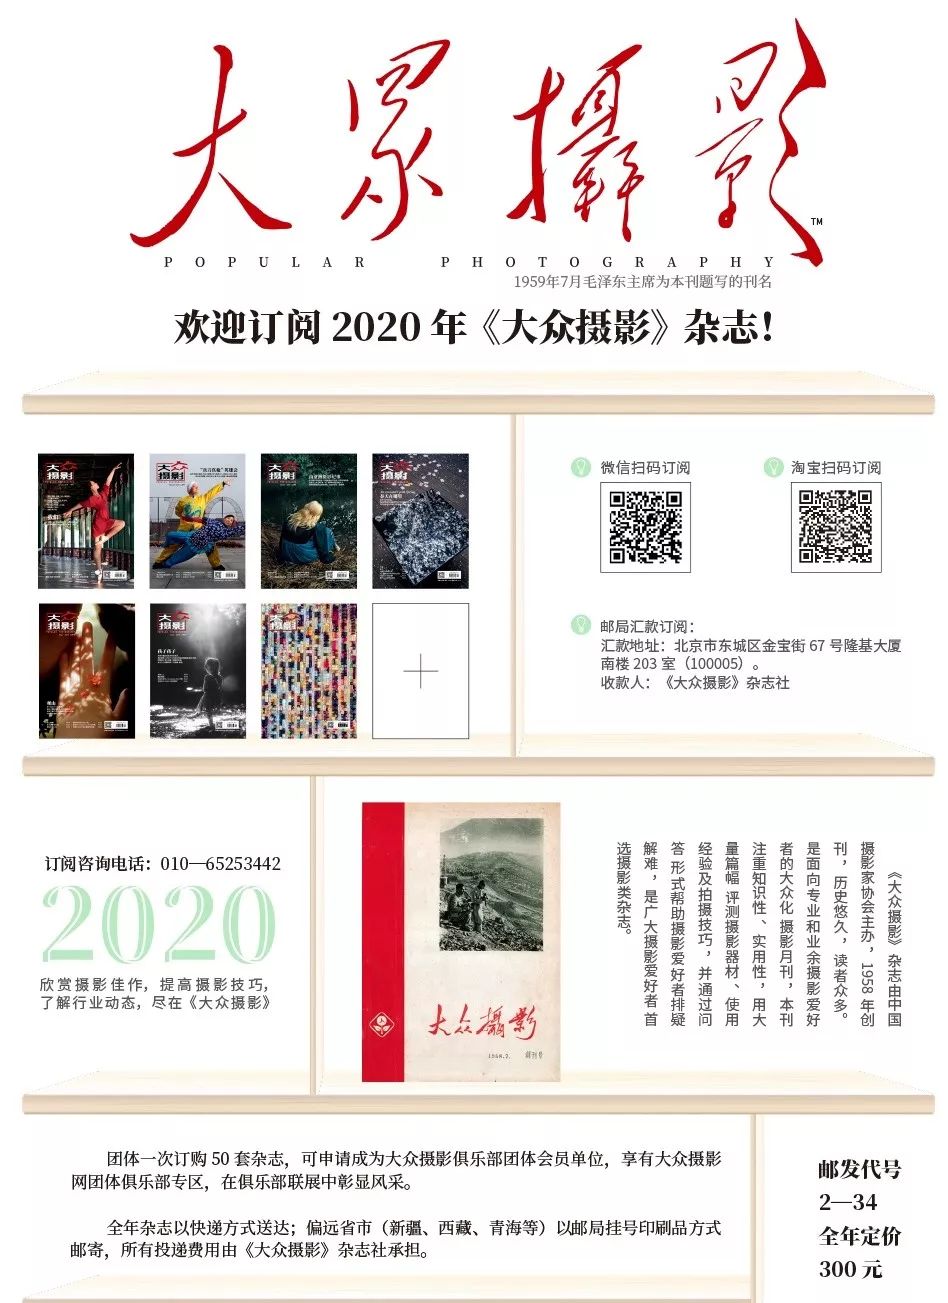 2019北京摄影展会_2019北京摄影展会_2019年摄影展会时间表